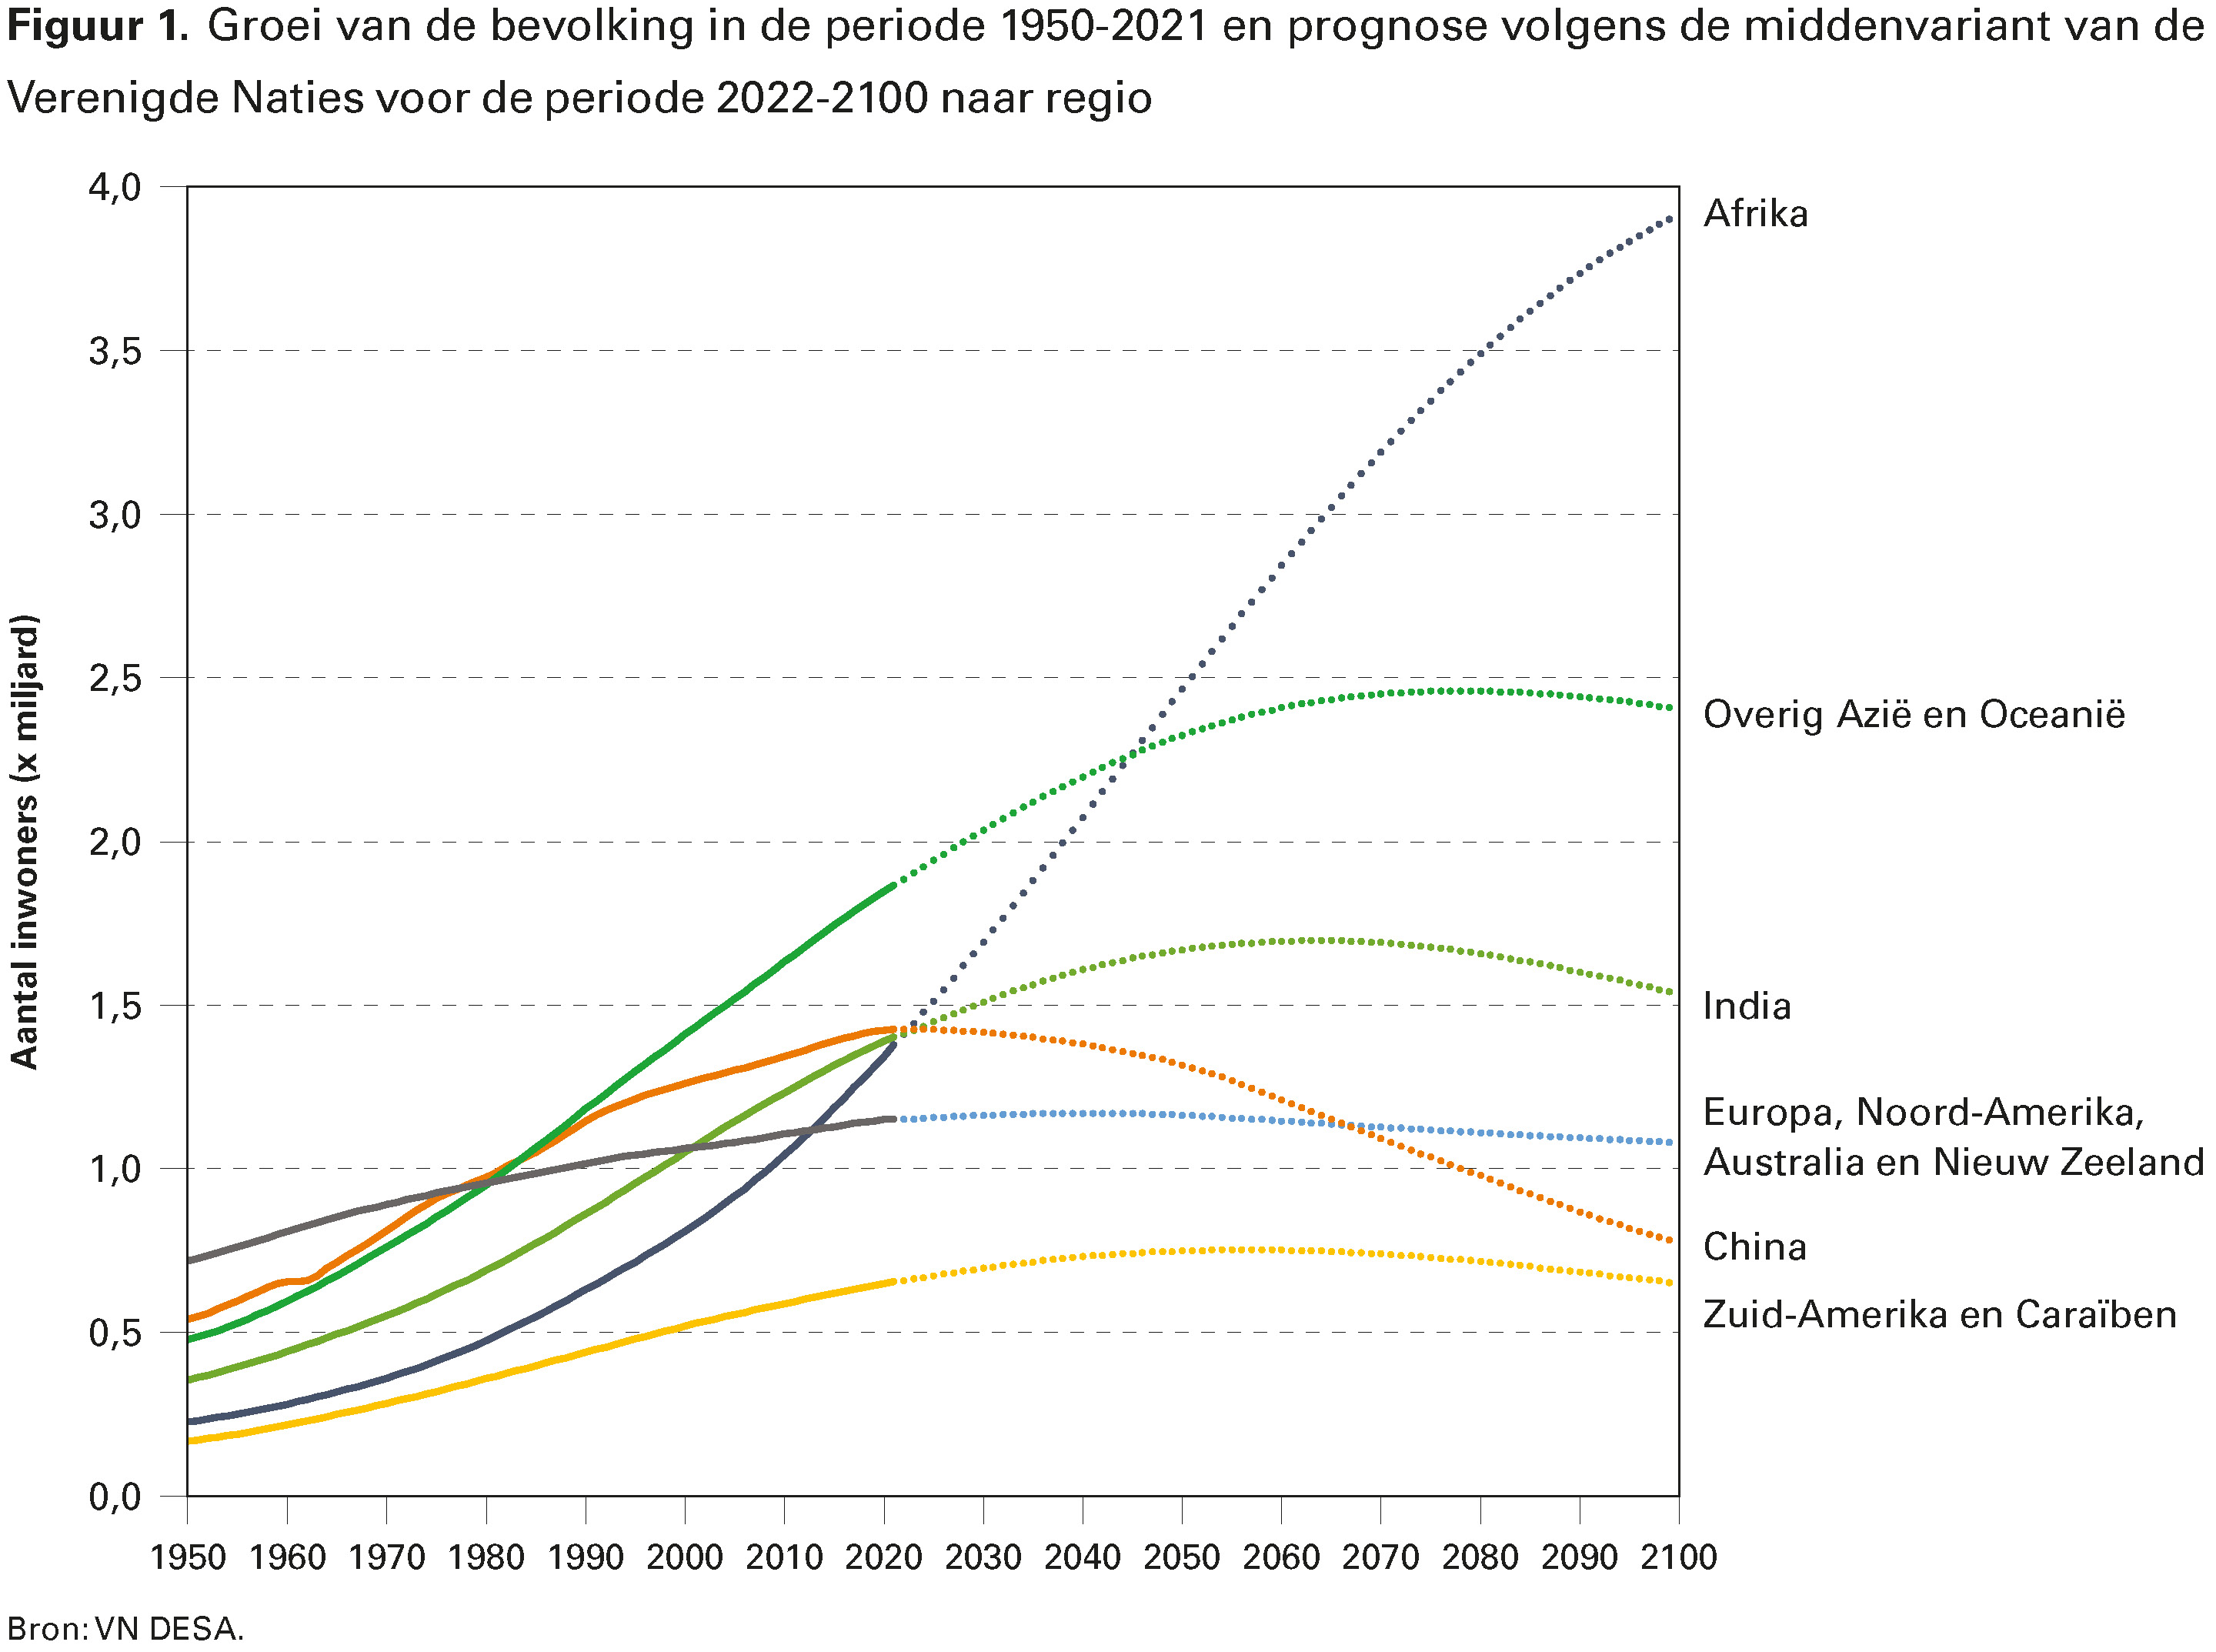 Figuur 1. Groei van de bevolking in de periode 1950-2021 en prognose volgens de middenvariant van de Verenigde Naties voor de periode 2022-2100 naar regio